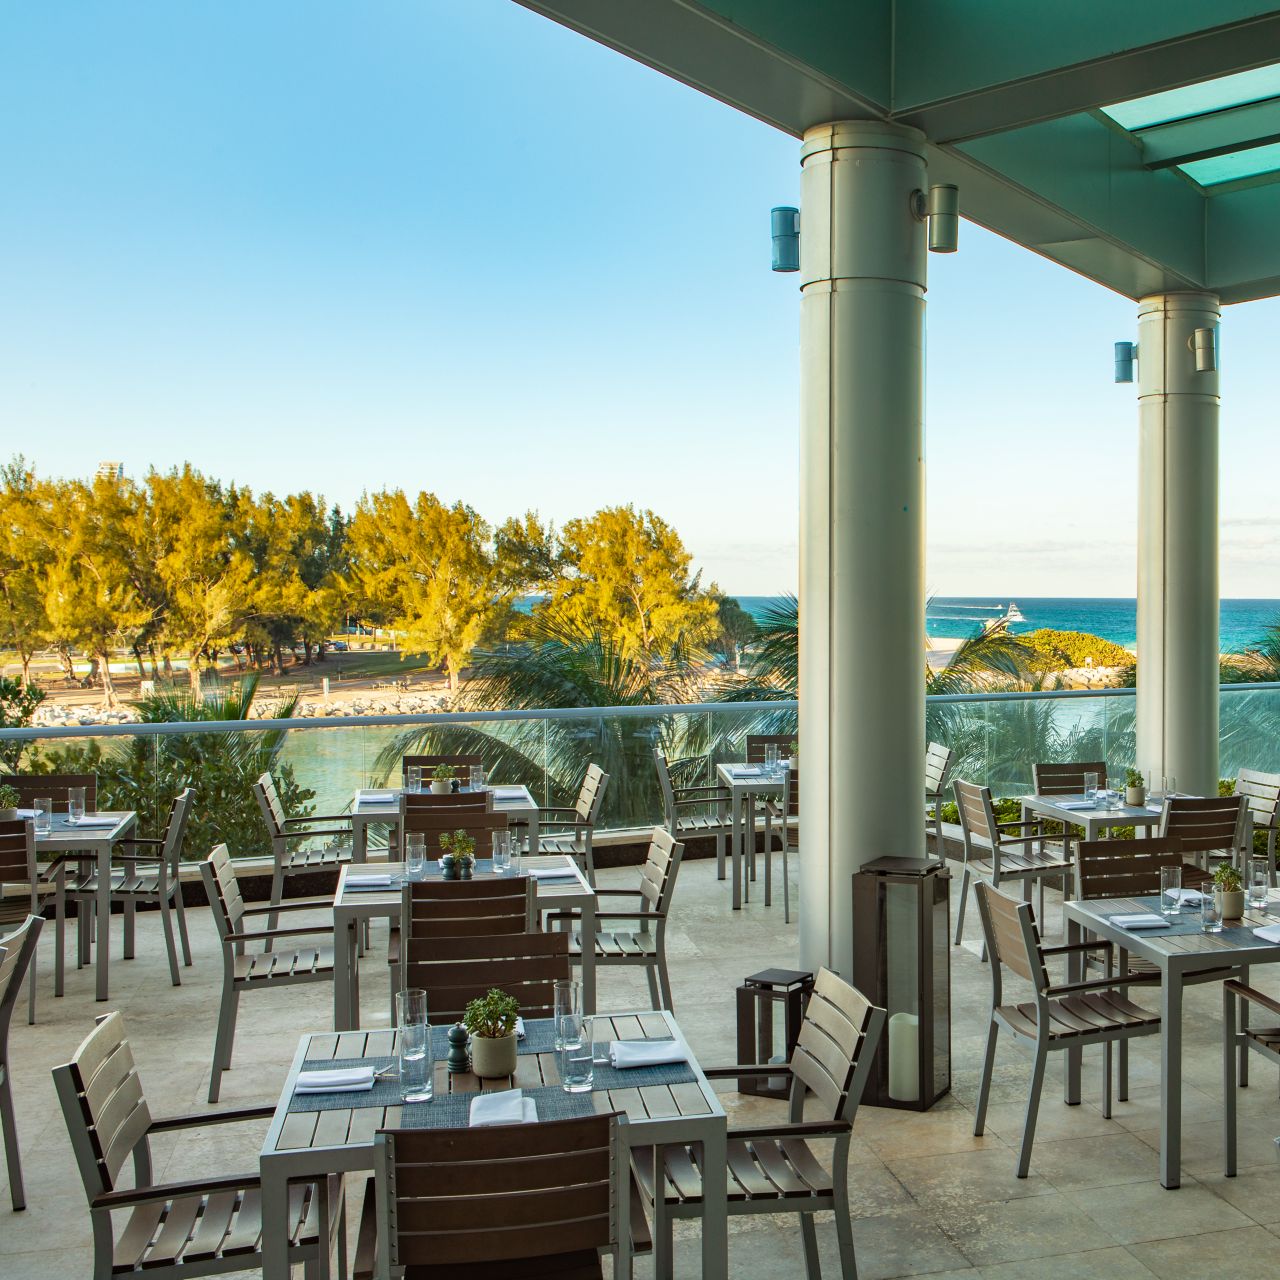 outdoor dining terrace overlooking ocean